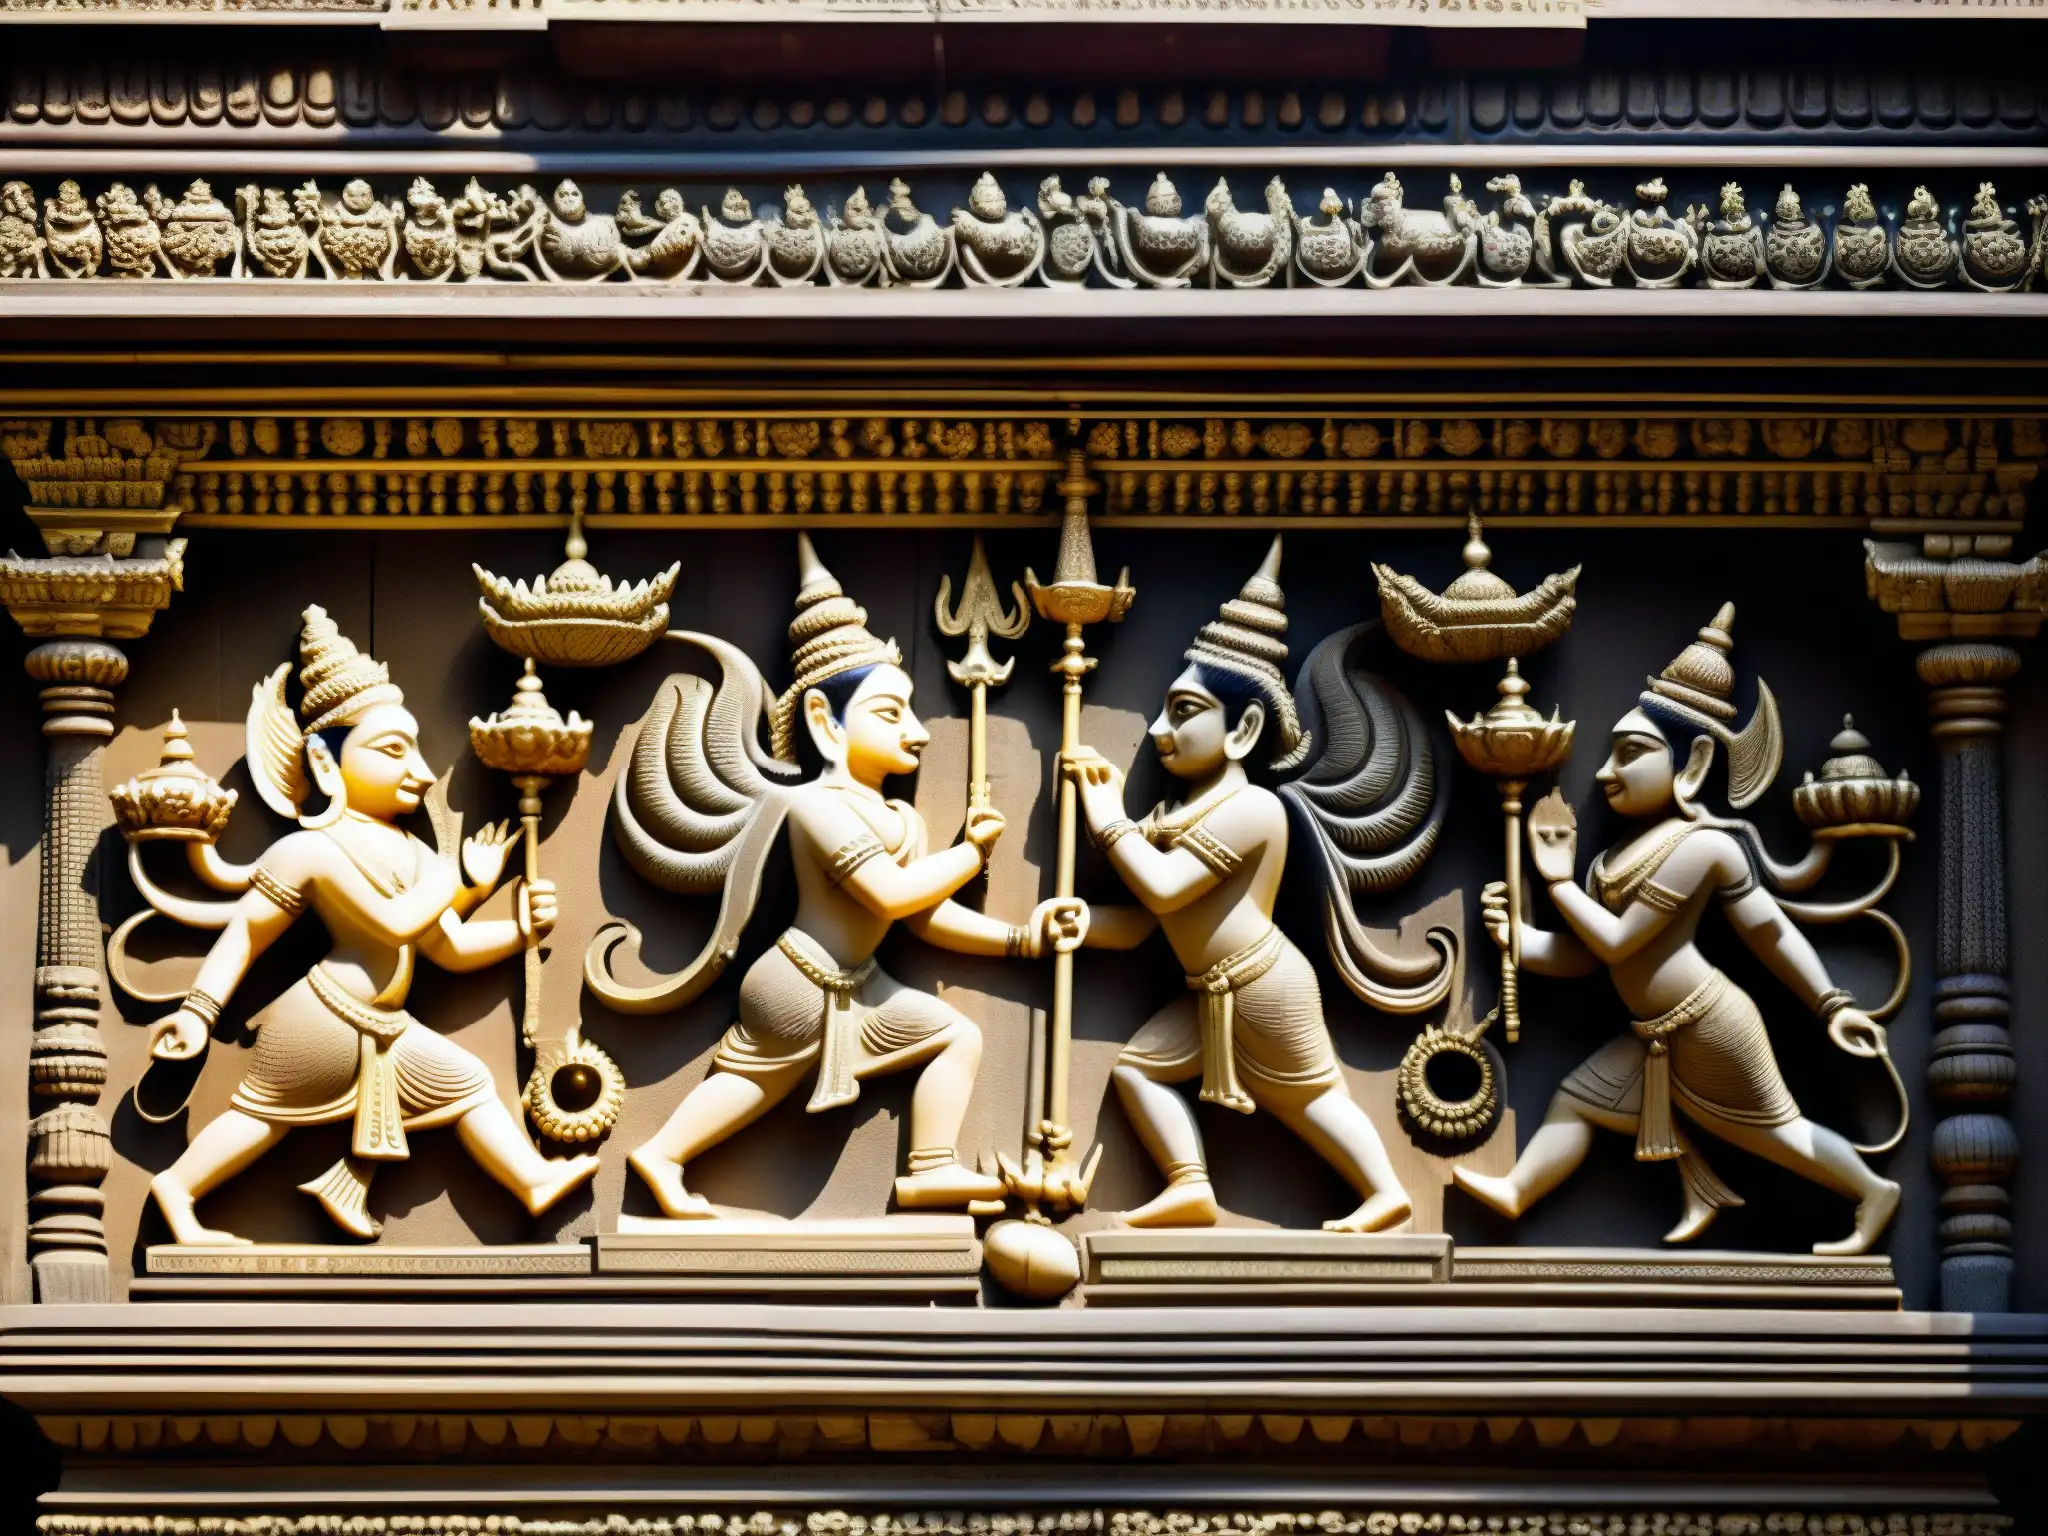 Misterios Templo Padmanabhaswamy: Intrincados grabados en piedra deidades y símbolos sagrados, resaltados por juego de luz y sombra